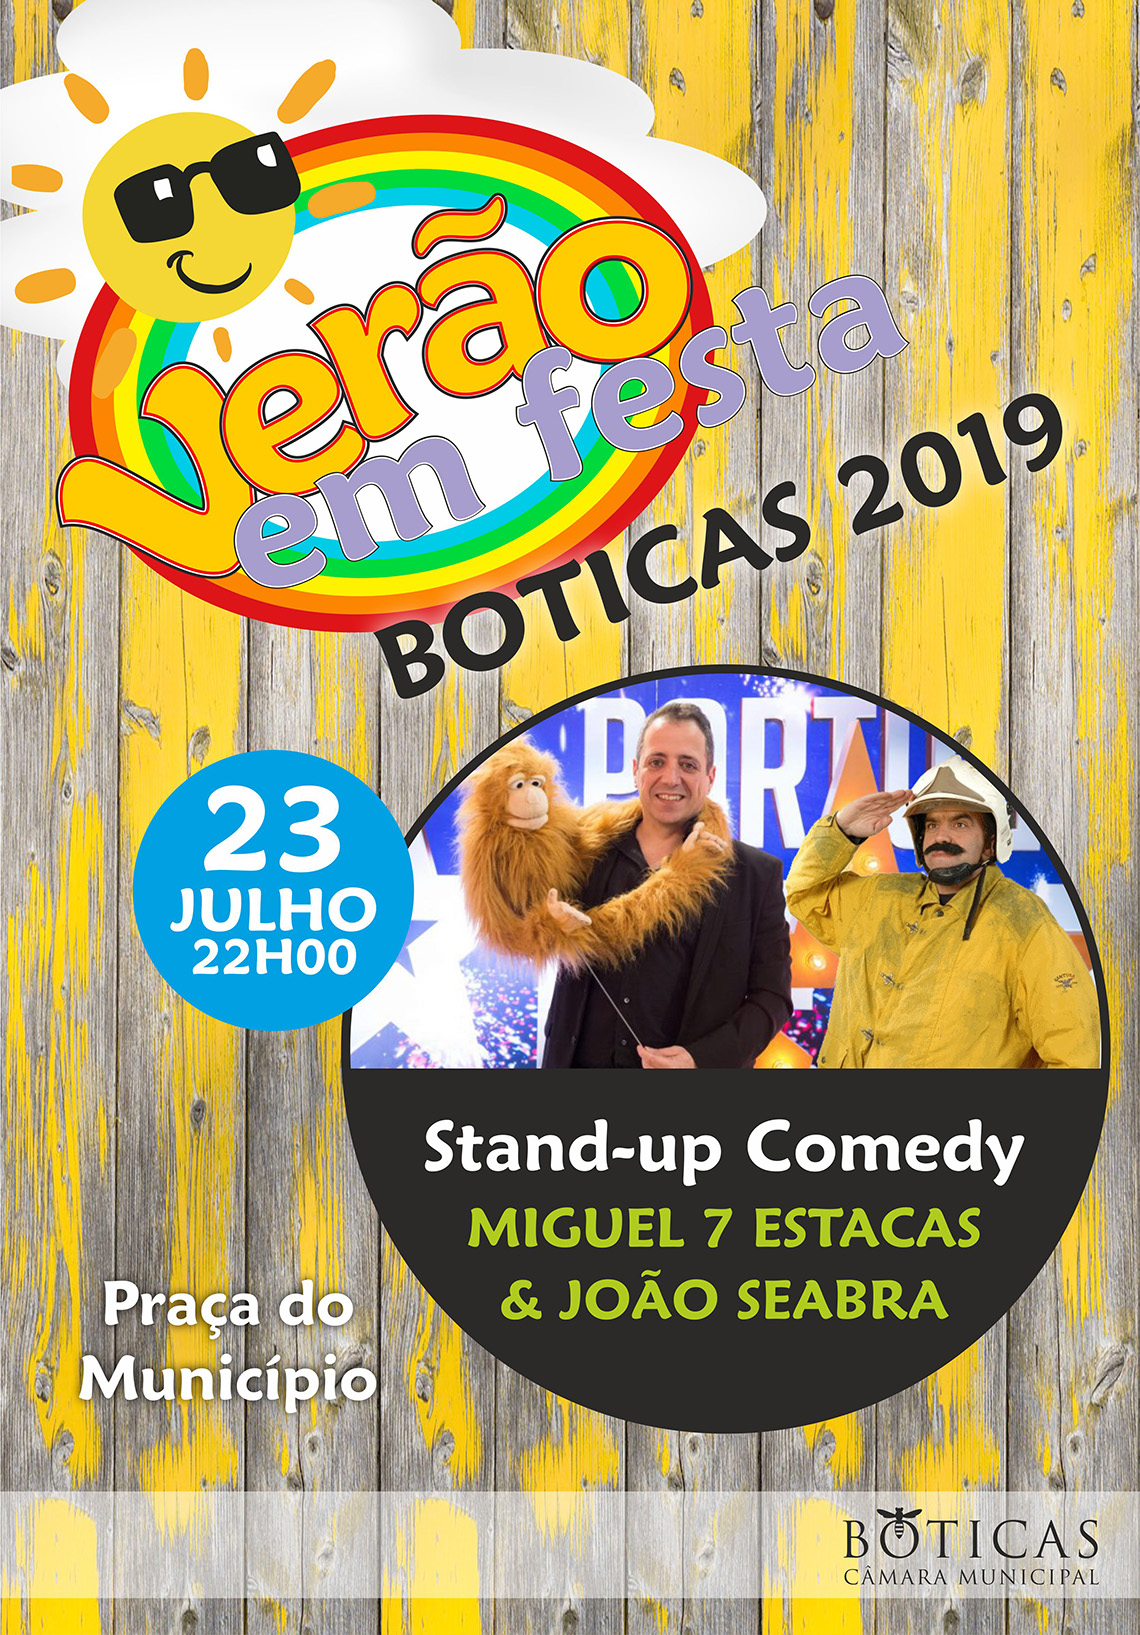 Vero em Festa 2019 | Stand-up Comedy